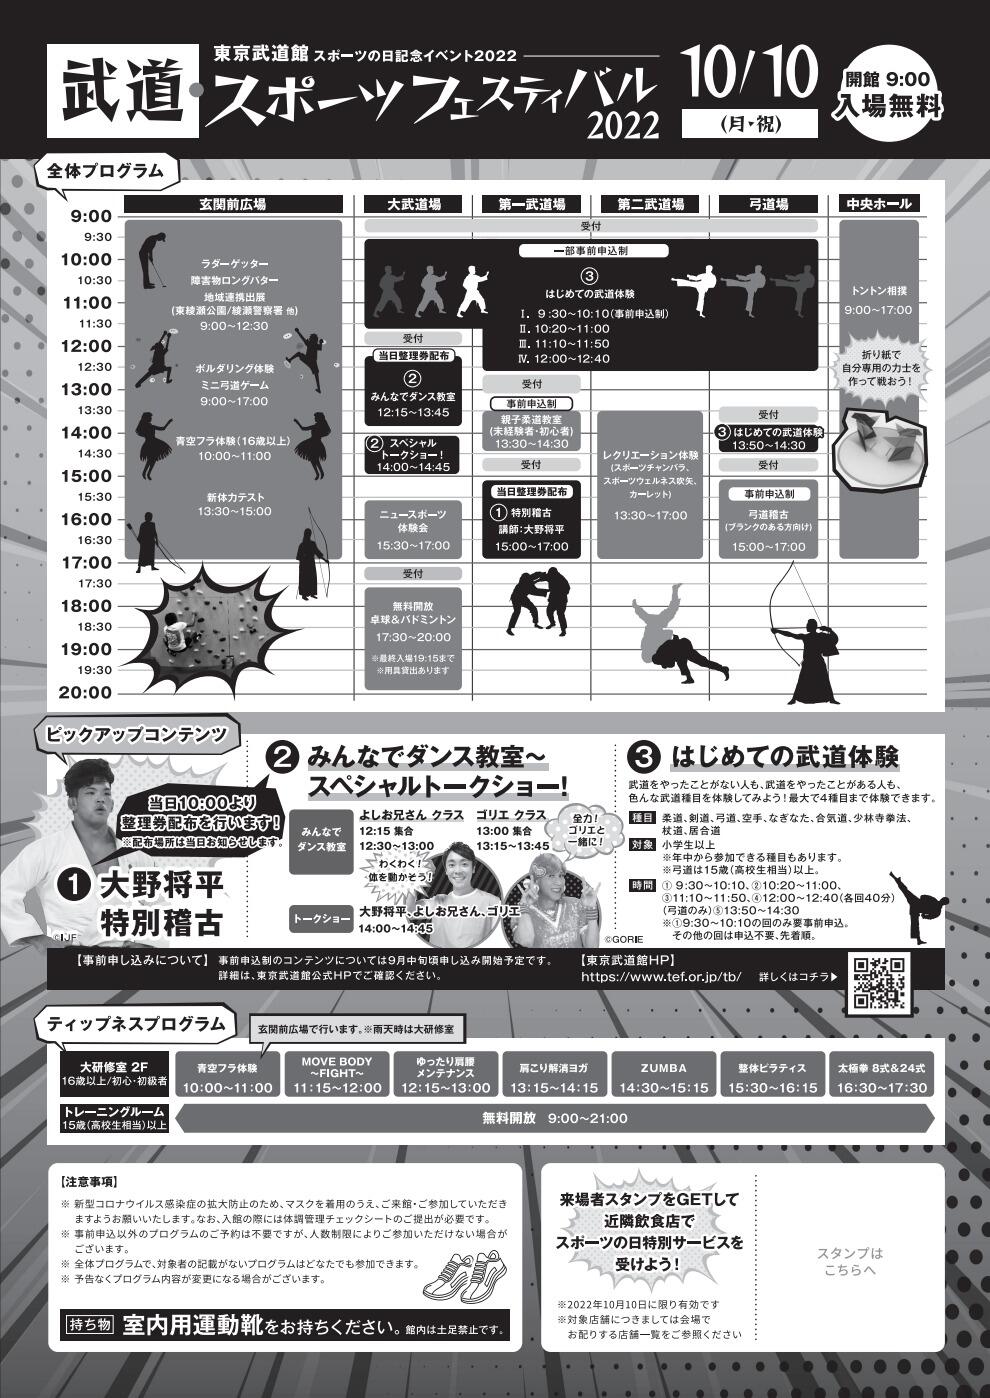 武道・スポーツフェスティバル2022「はじめての武道体験」【居合道】